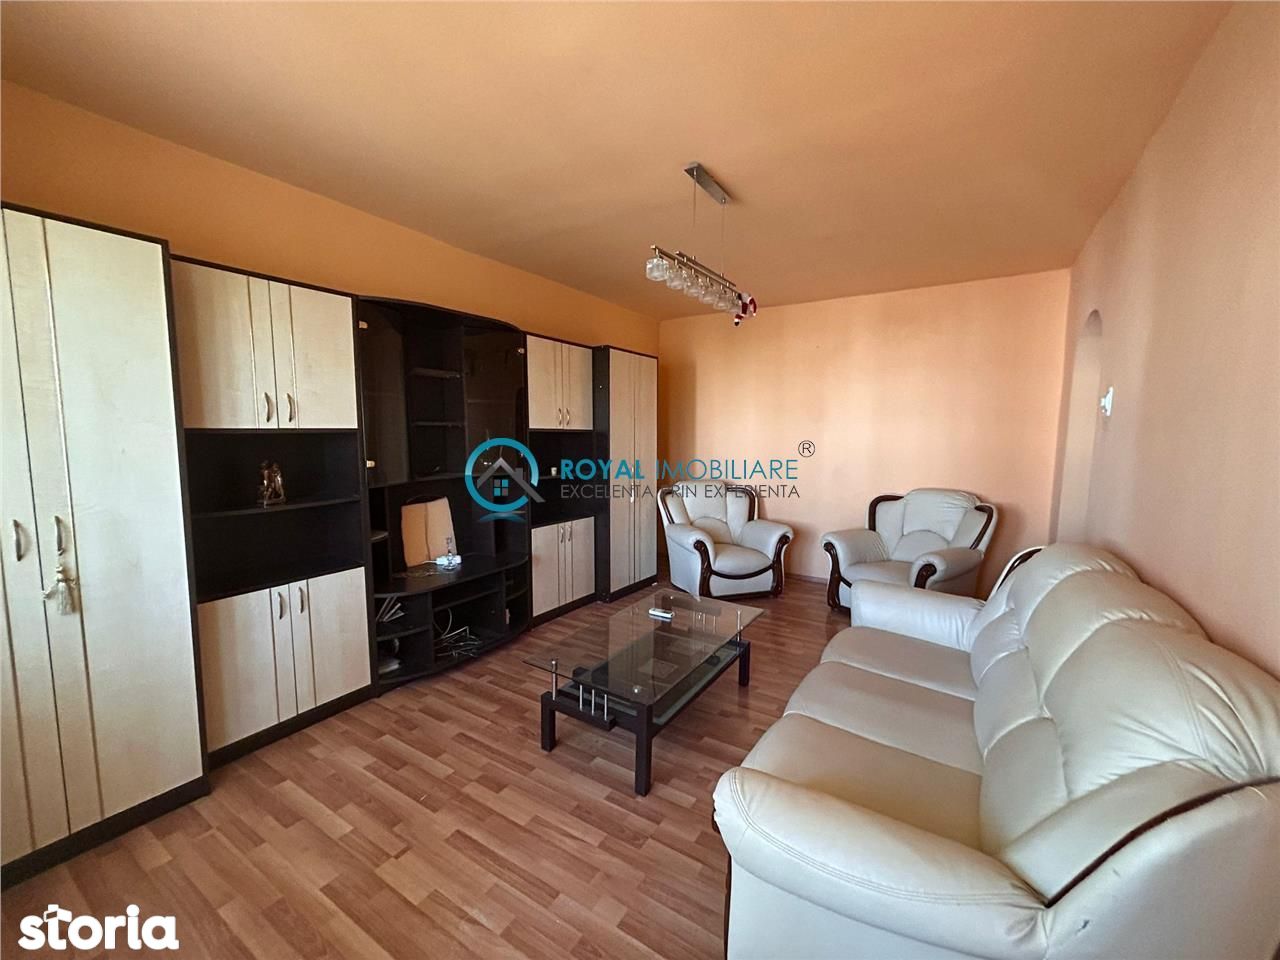 Royal Imobiliare-Vanzare Apartament 3 camere-zona Cantacuzino